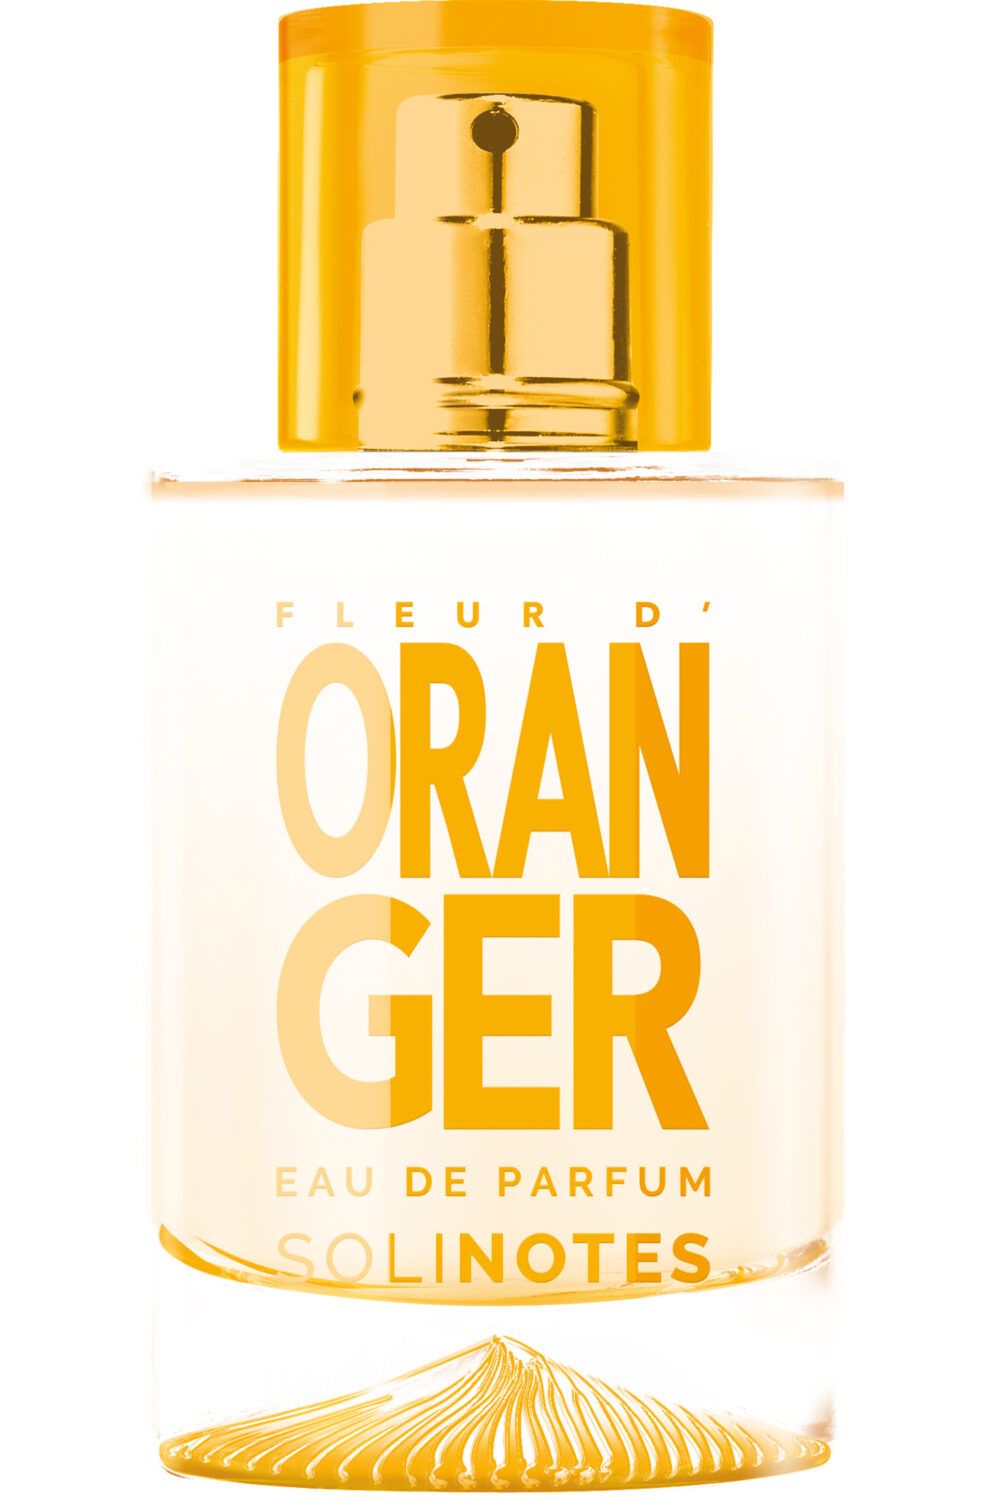 Solinotes - Eau de parfum Fleur d'oranger 50 ml